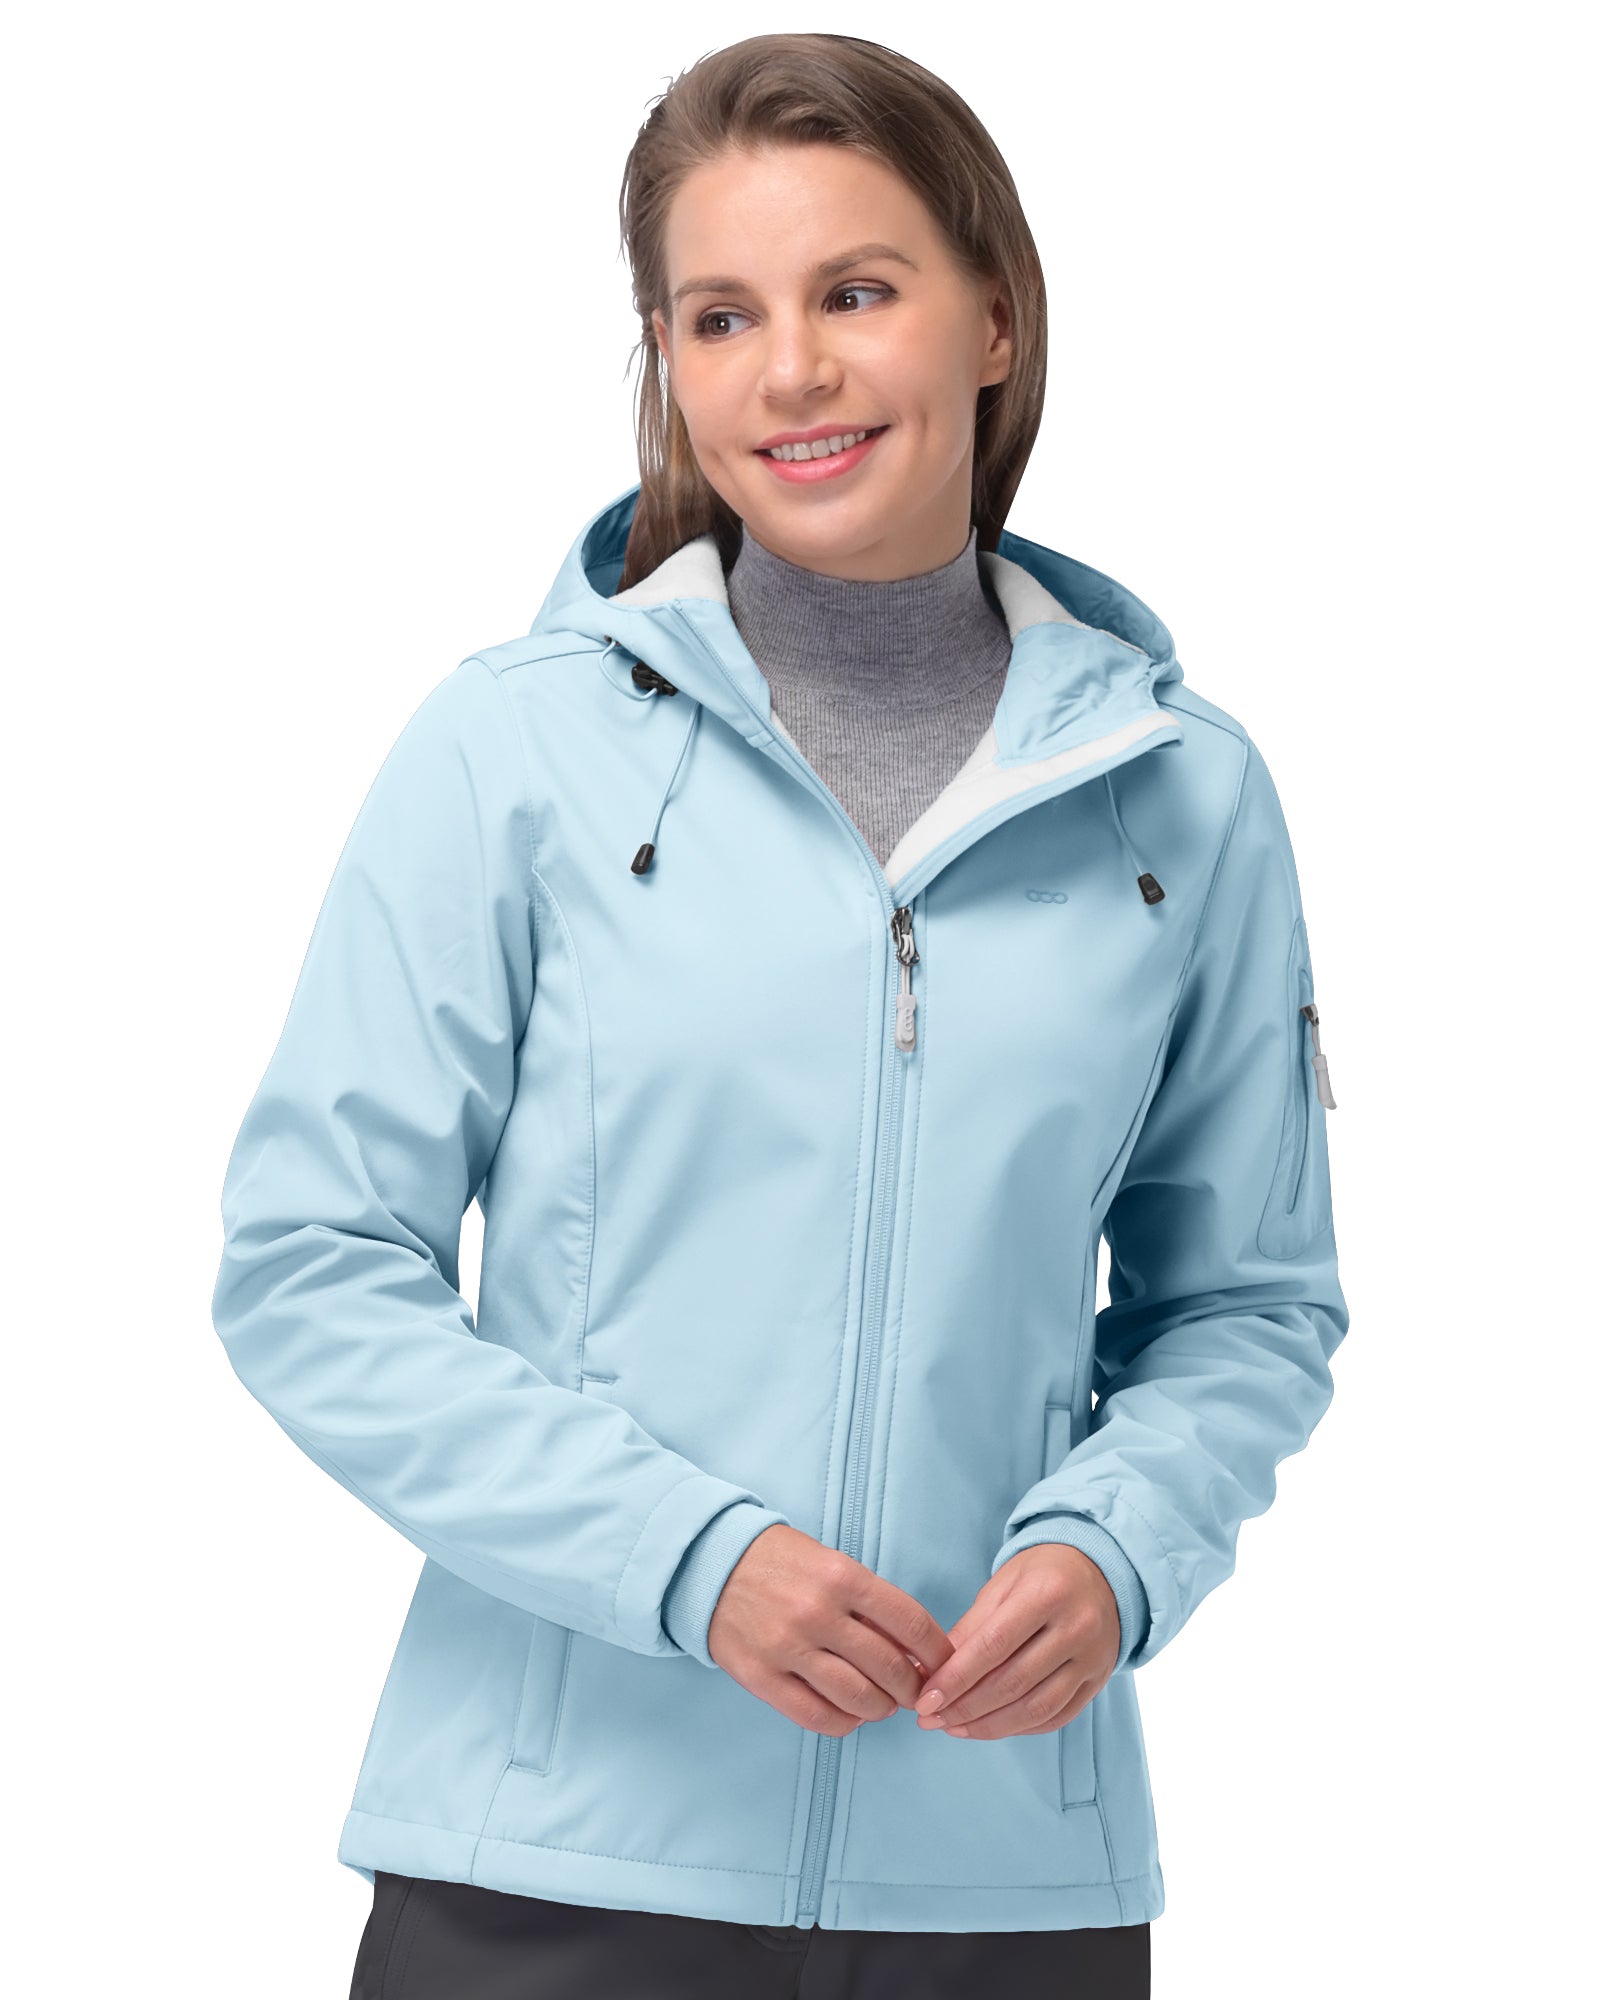 33,000ft Women's Softshell Jacket, Fleece Lined Warm Jacket Light